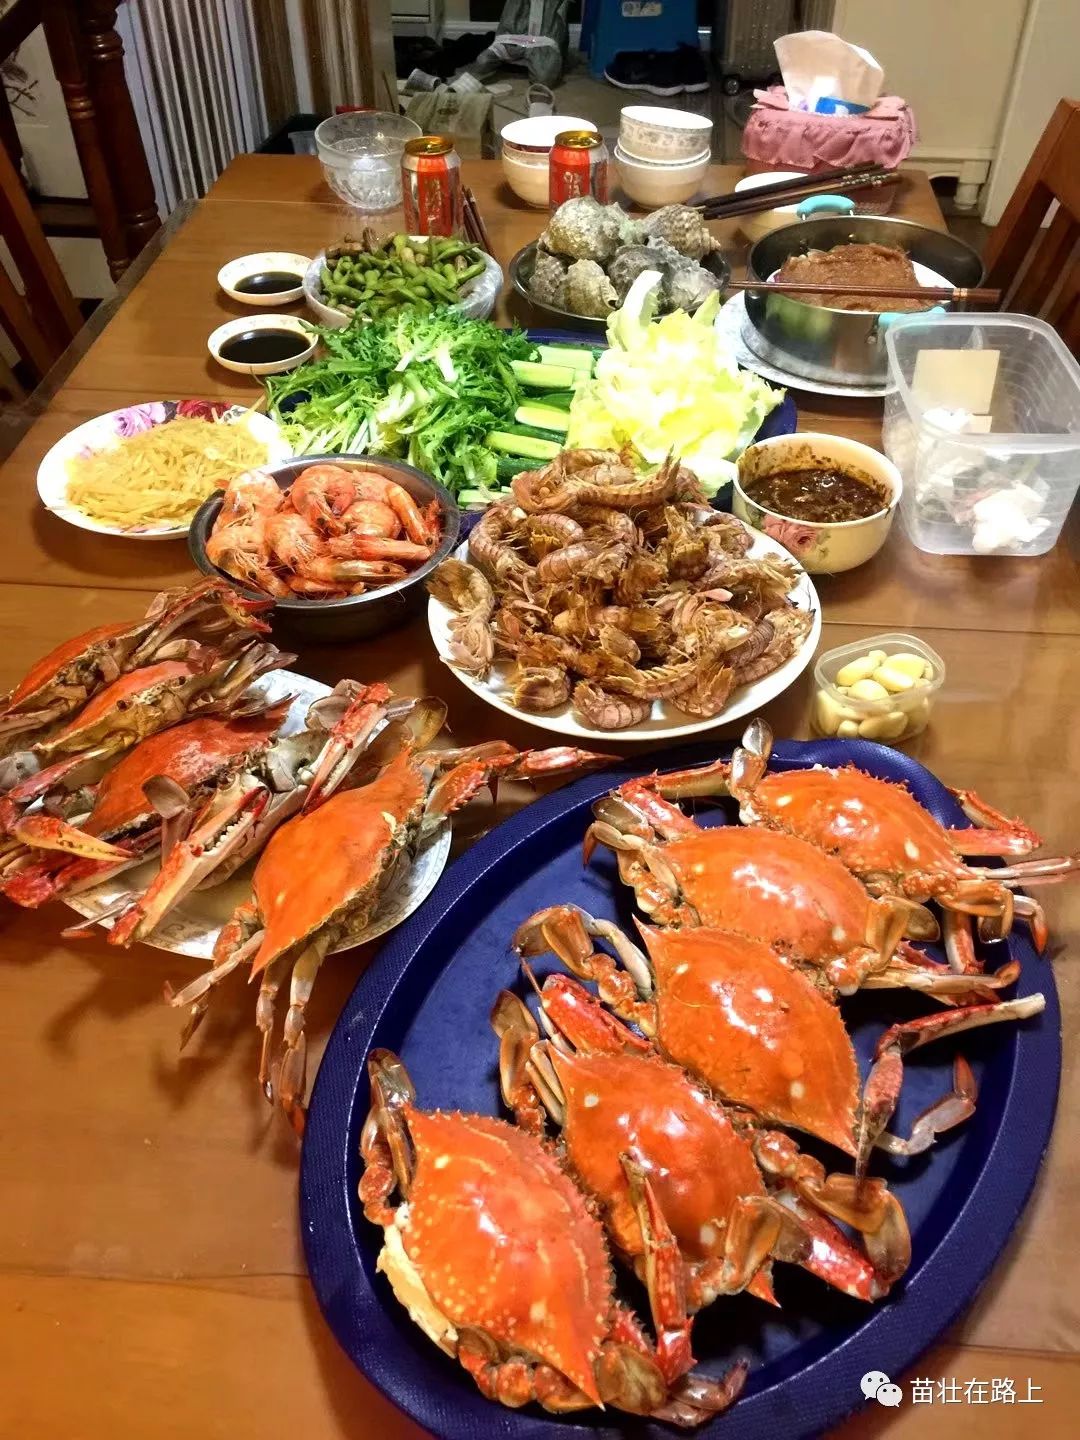 老邻居红卫家的晚餐,海鲜大餐从青岛直达.